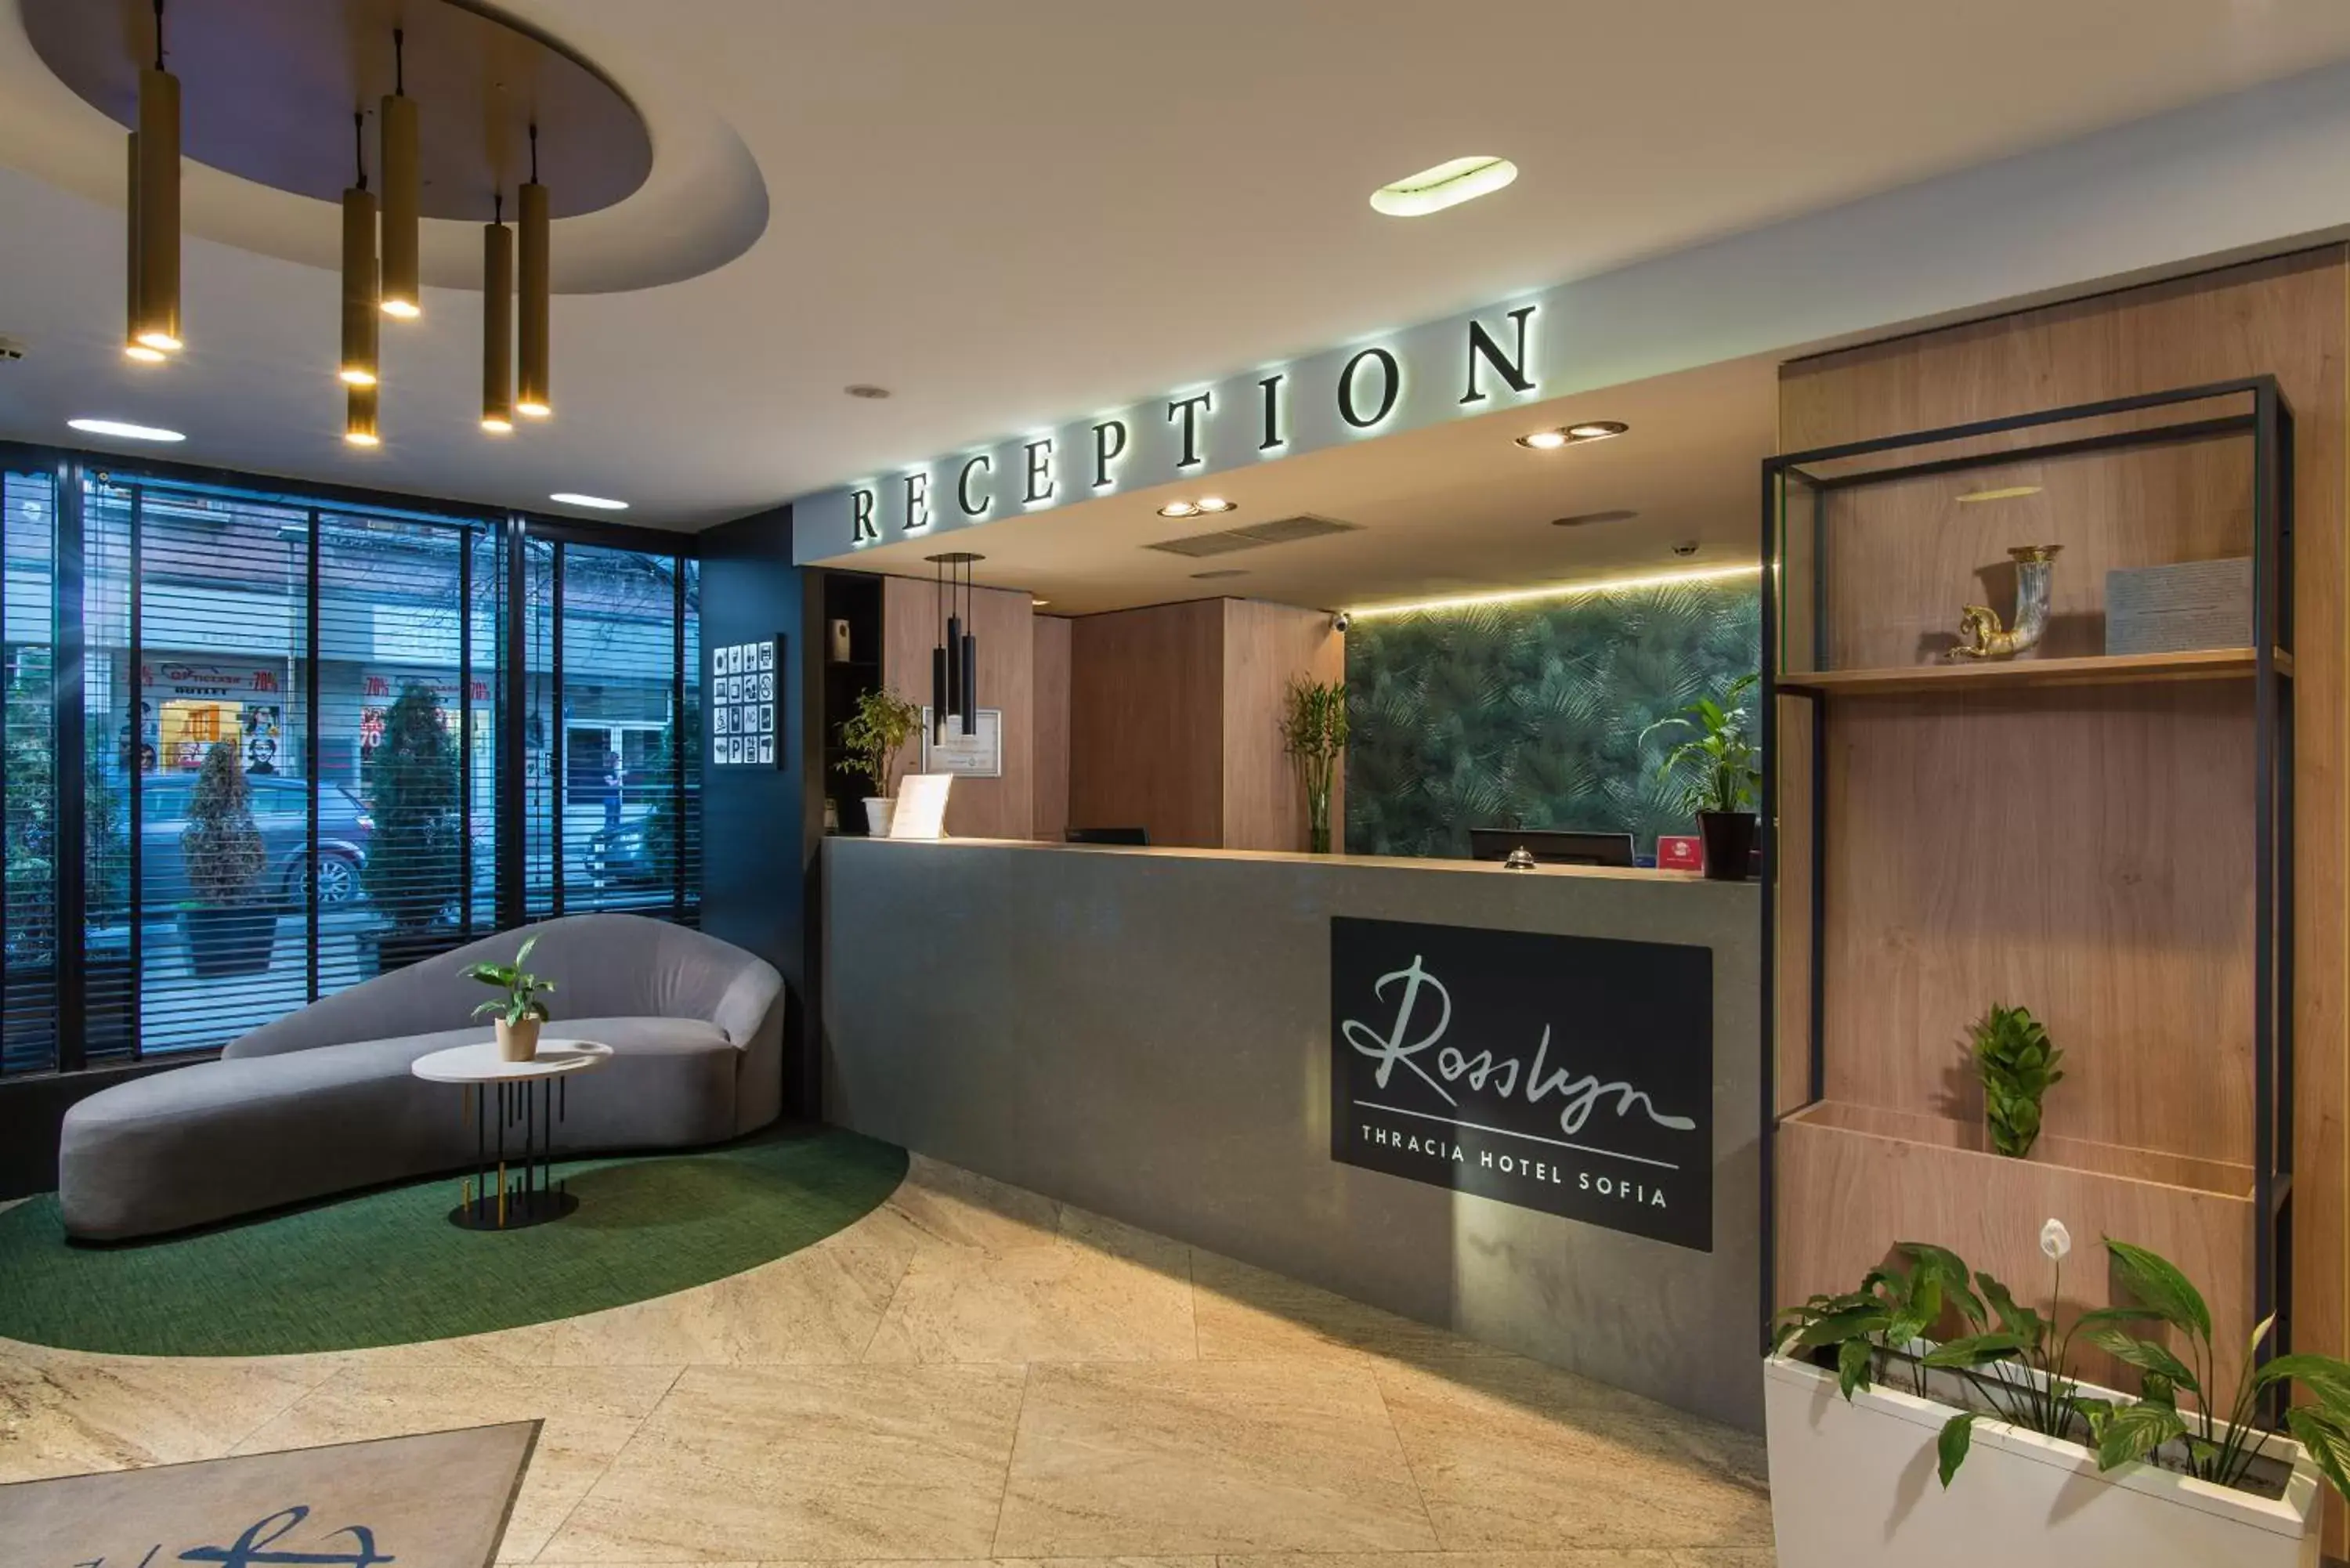 Lobby or reception, Lobby/Reception in Rosslyn Thracia Hotel Sofia